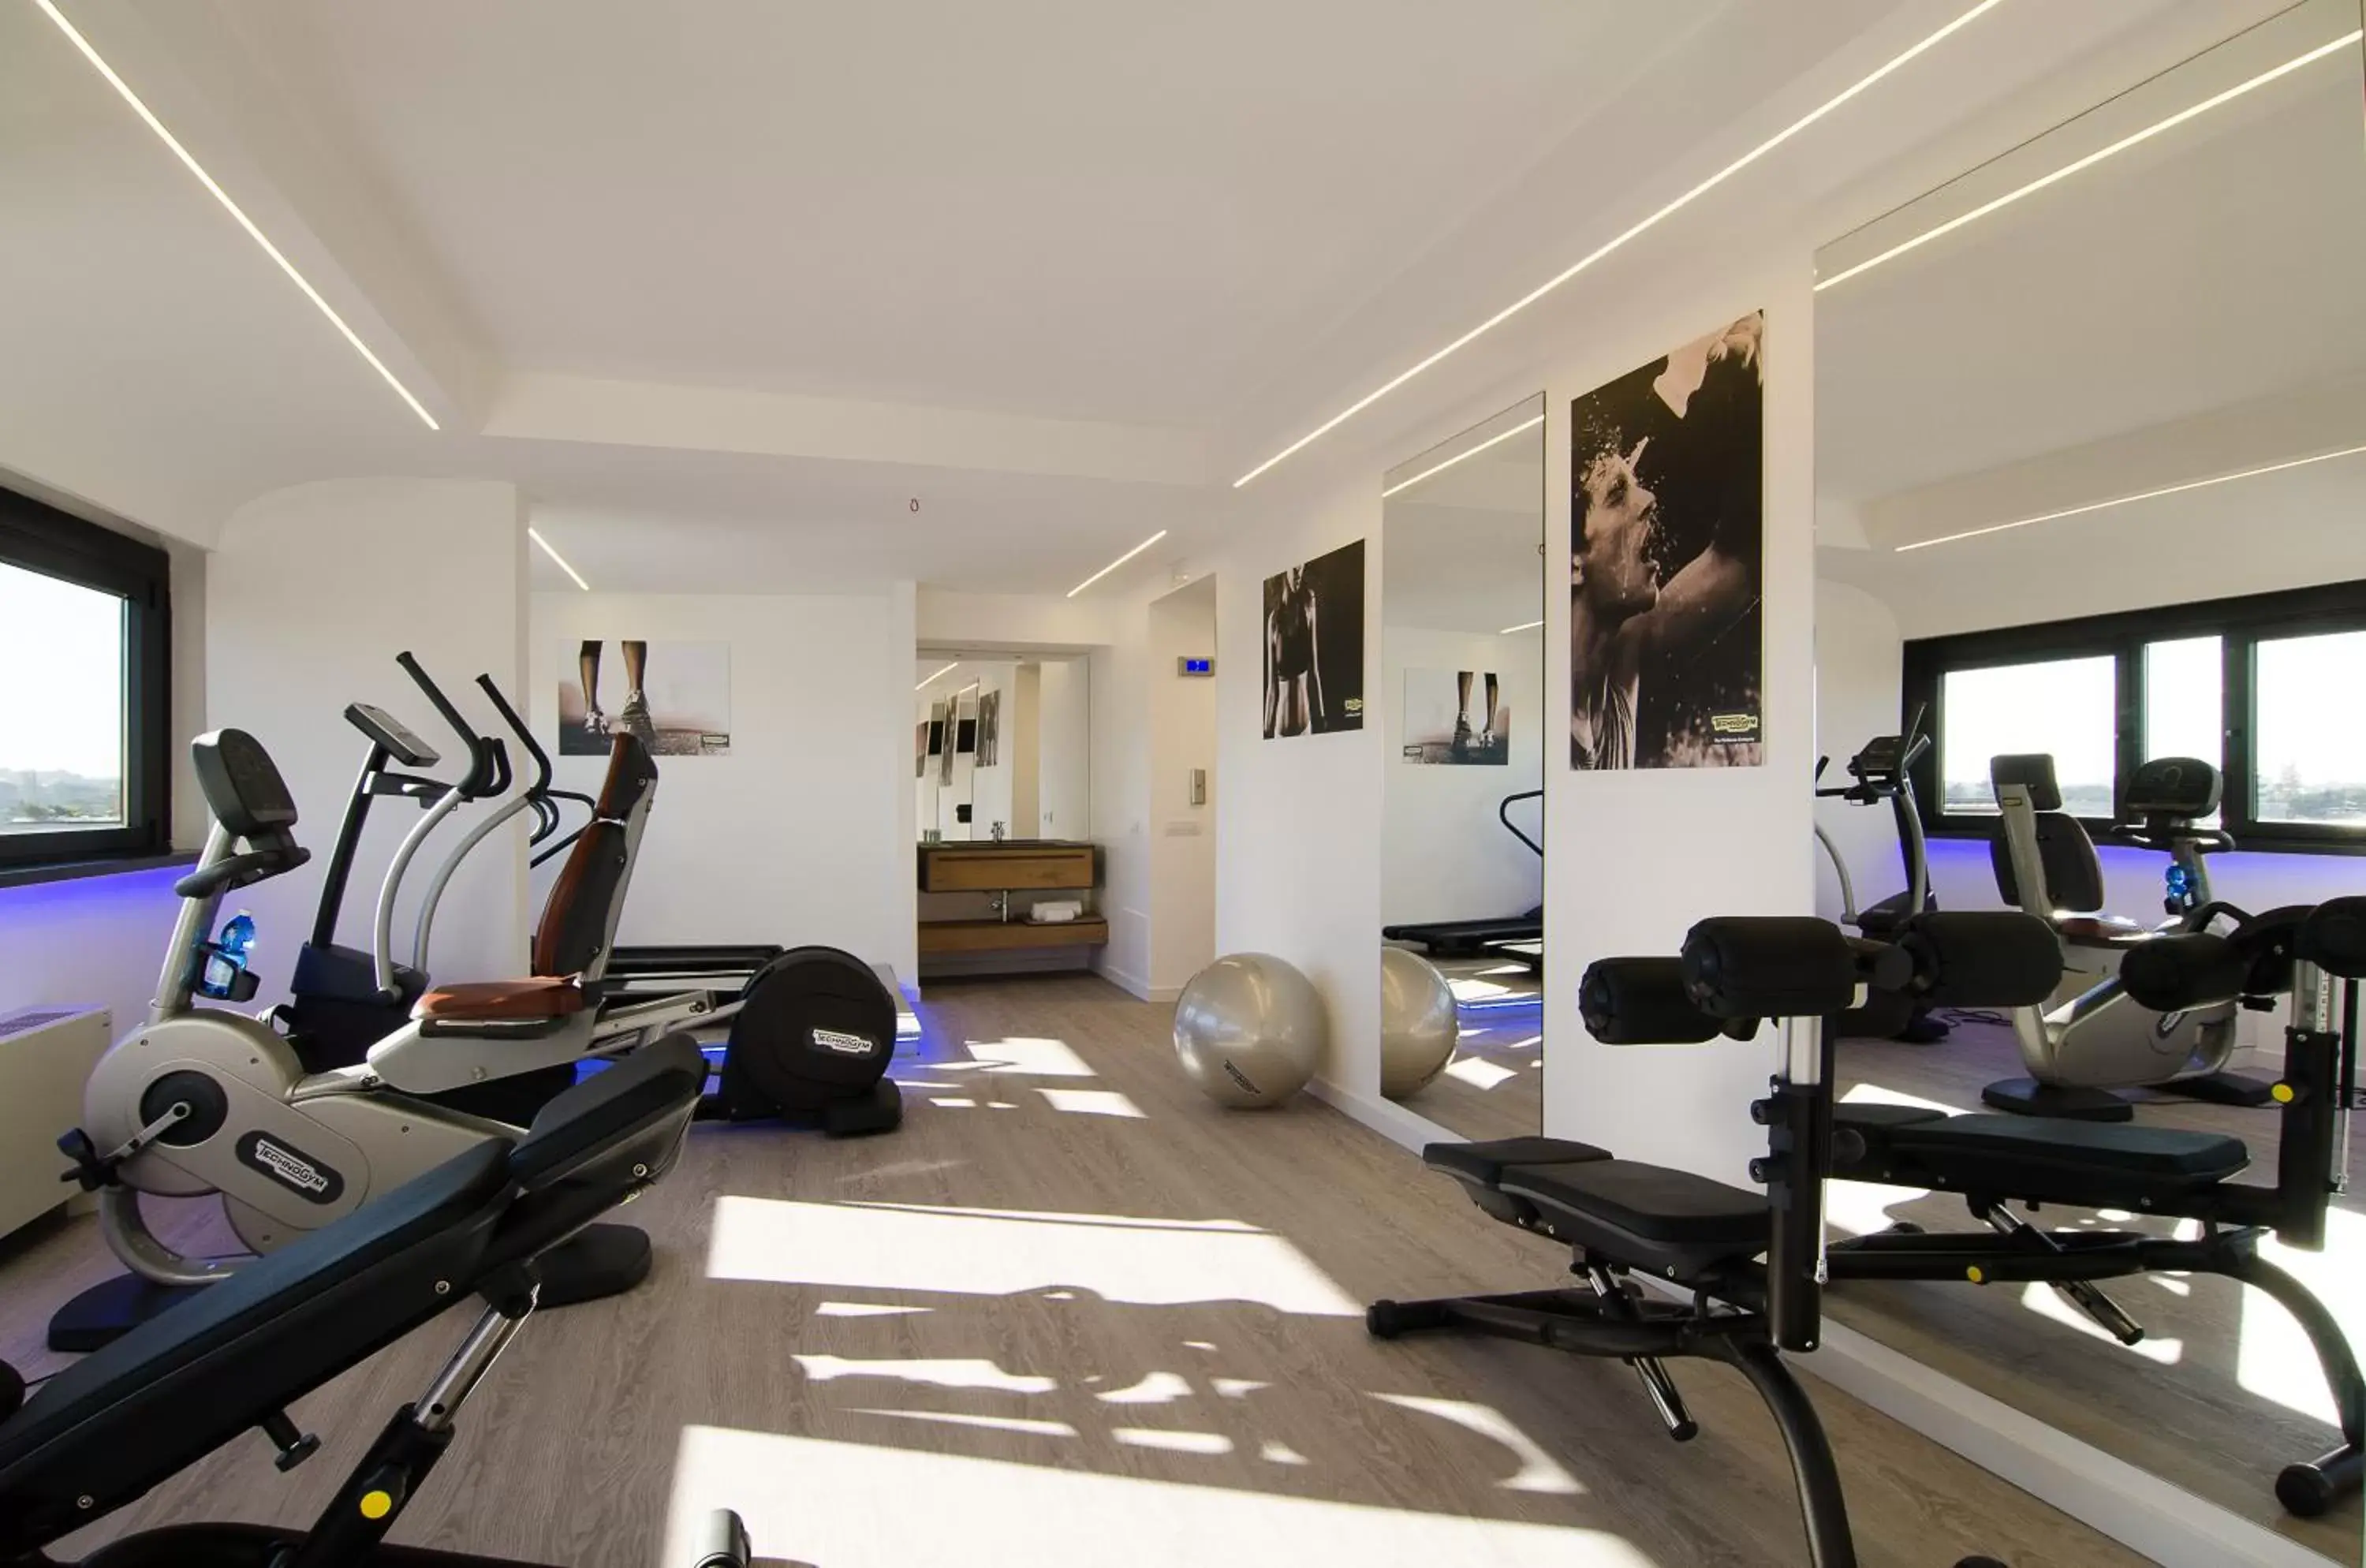 Fitness centre/facilities, Fitness Center/Facilities in Hotel Dei Congressi